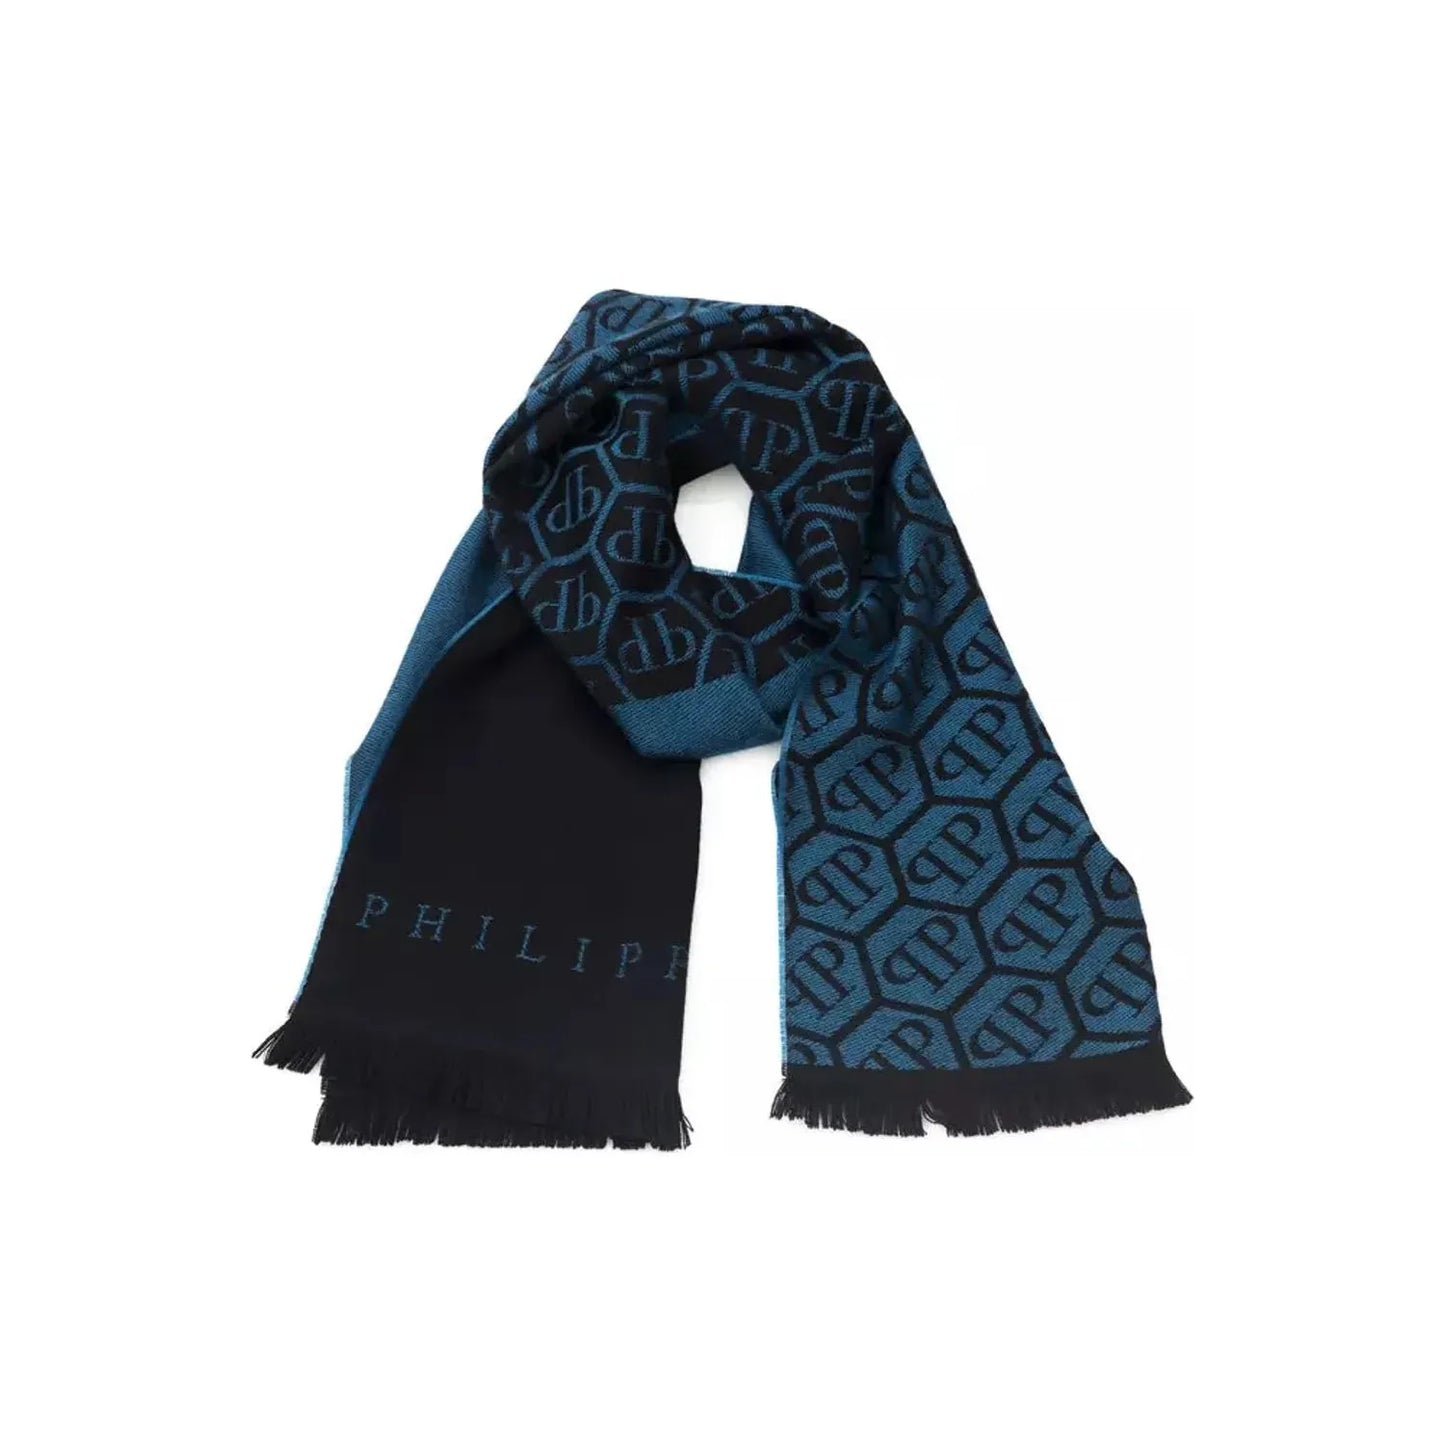 Philipp Plein Elegant Fringed Monogram Scarf blue-wool-scarf-2 Wool Wrap Shawl Scarf product-22245-238560981-24-bc988d26-e02.webp